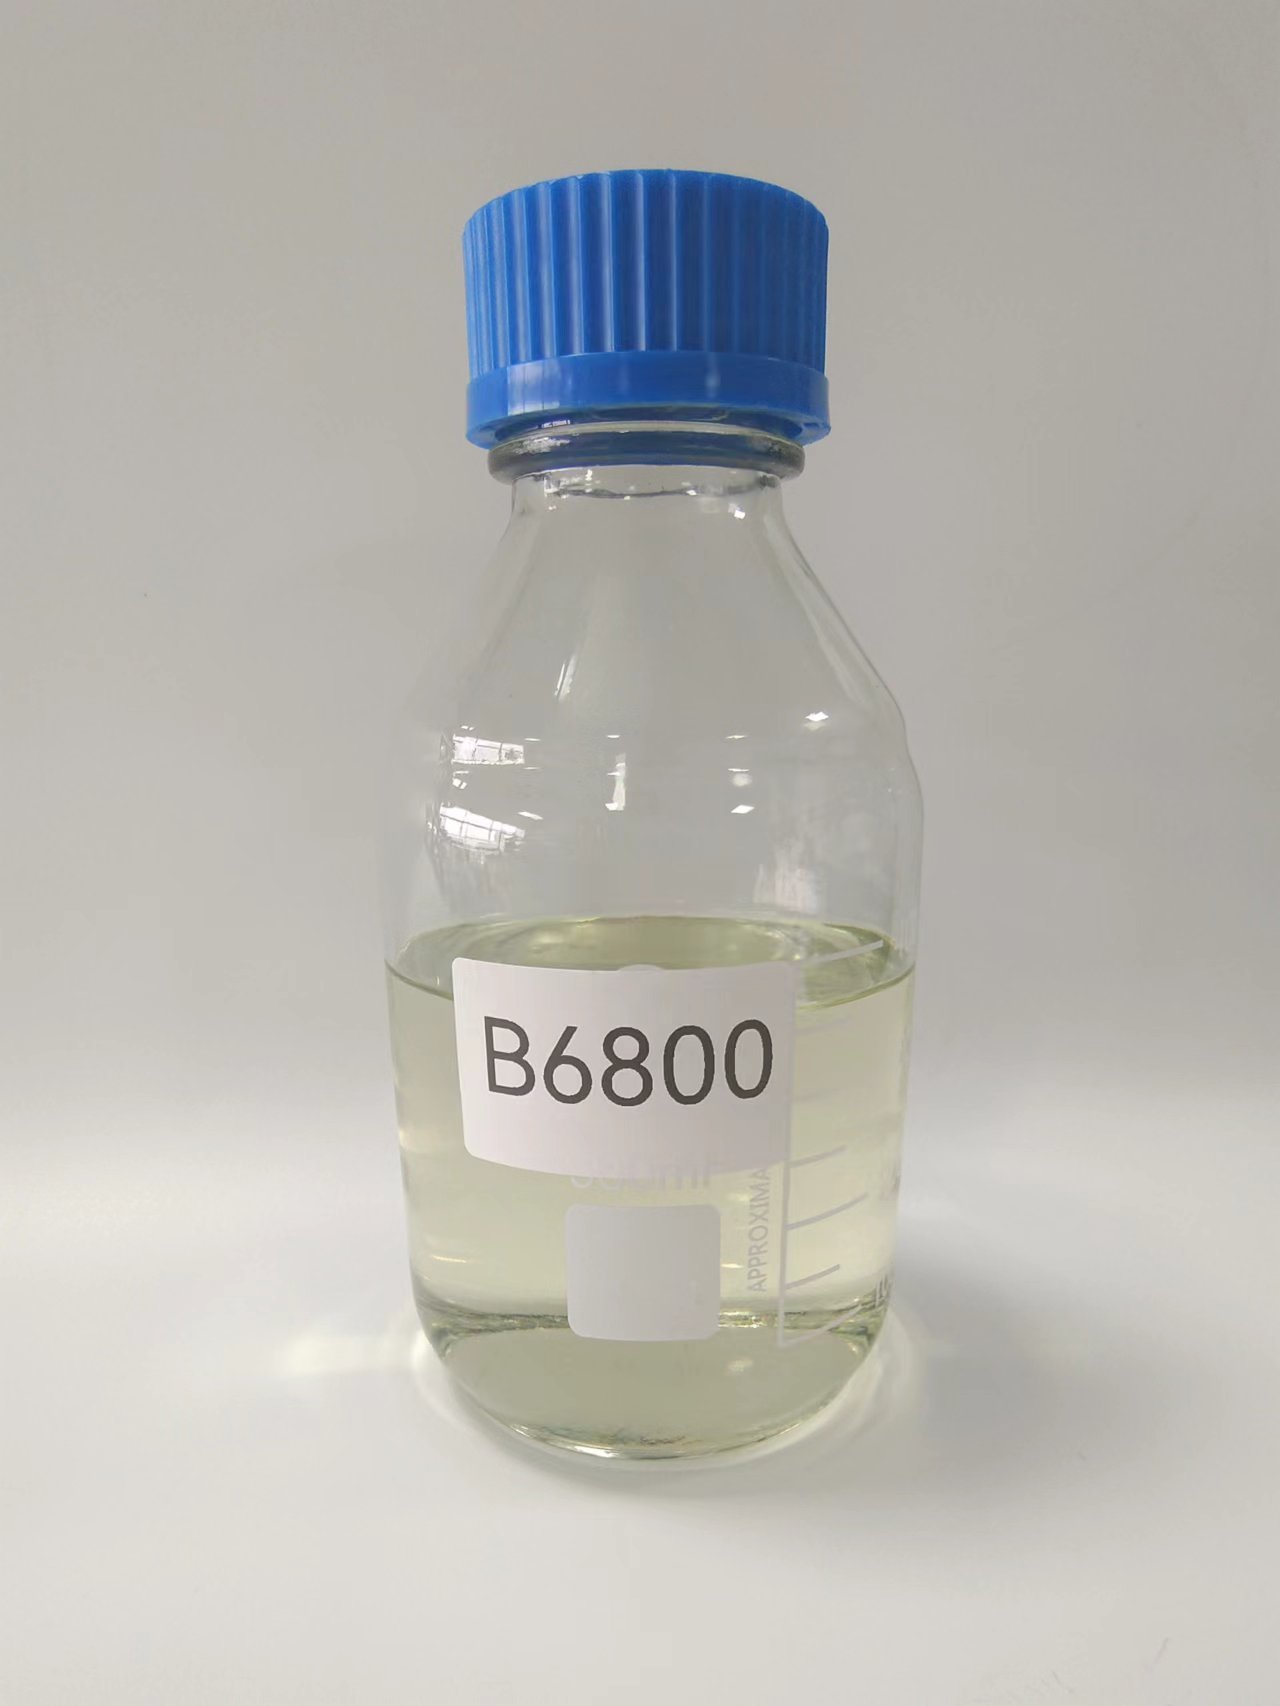 B6800 Hybrid silicone resin